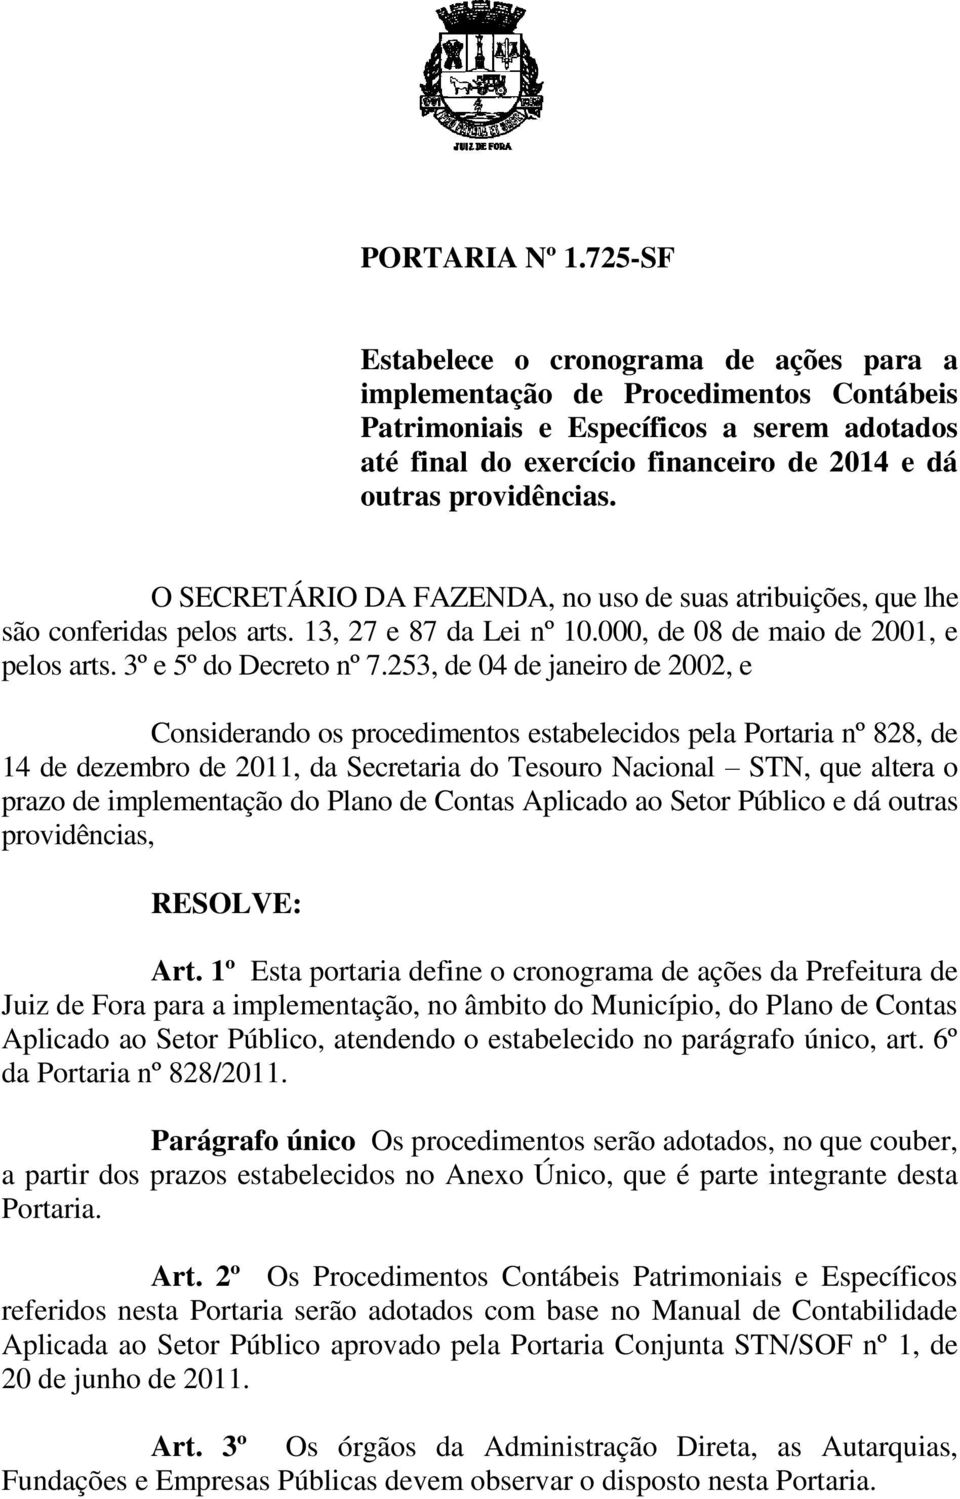 O SECRETÁRIO DA FAZENDA, no uso de suas atribuições, que lhe são conferidas pelos arts. 13, 27 e 87 da Lei nº 10.000, de 08 de maio de 2001, e pelos arts. 3º e 5º do Decreto nº 7.